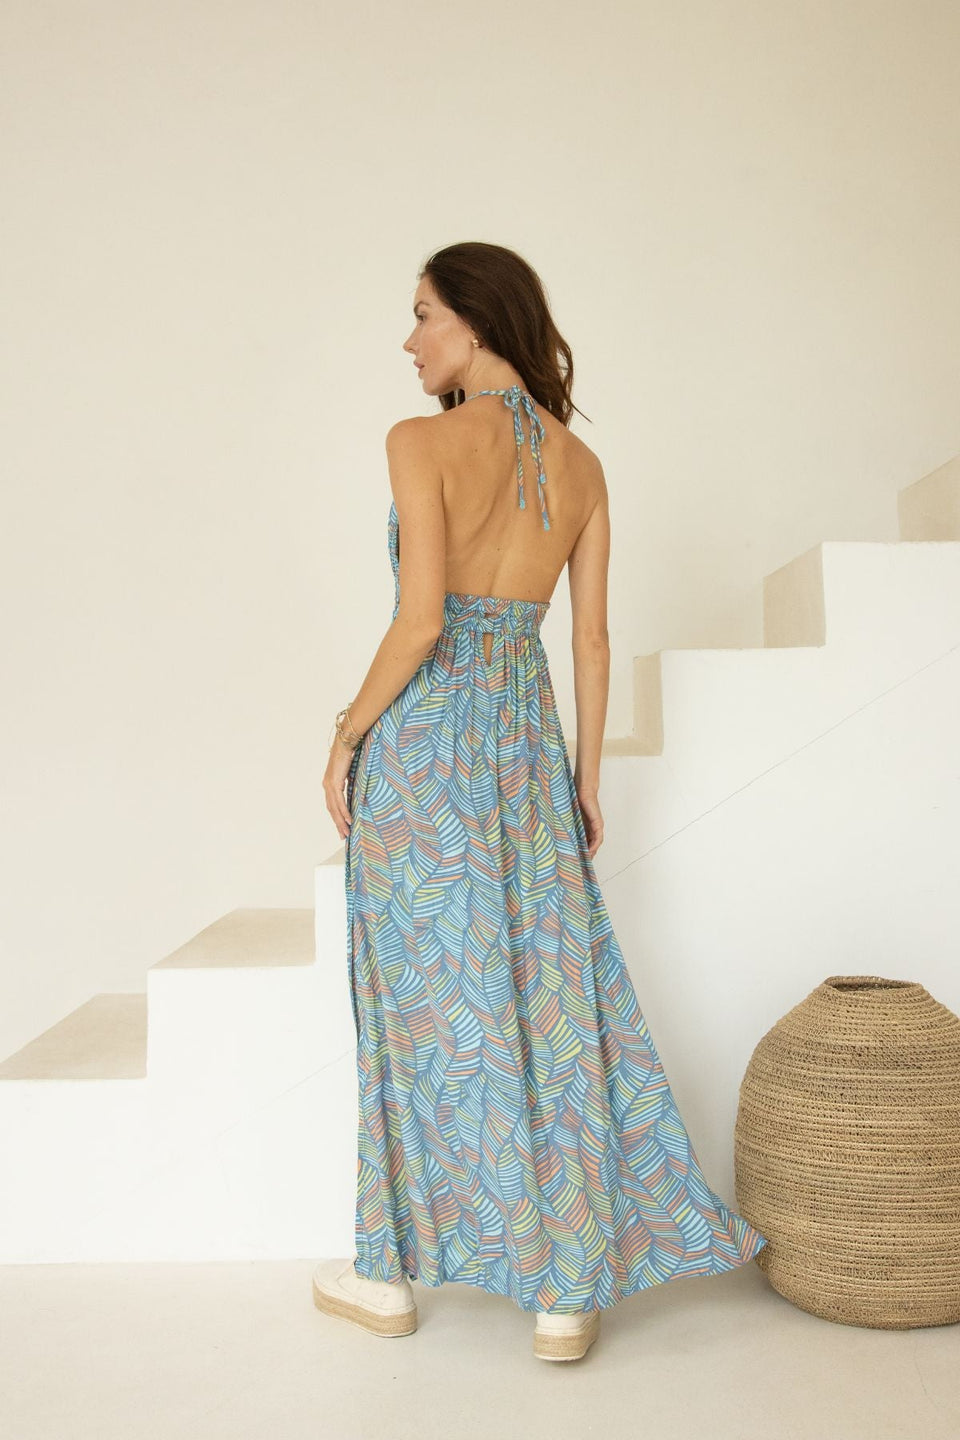 Savannah Long Dress // Leaves print